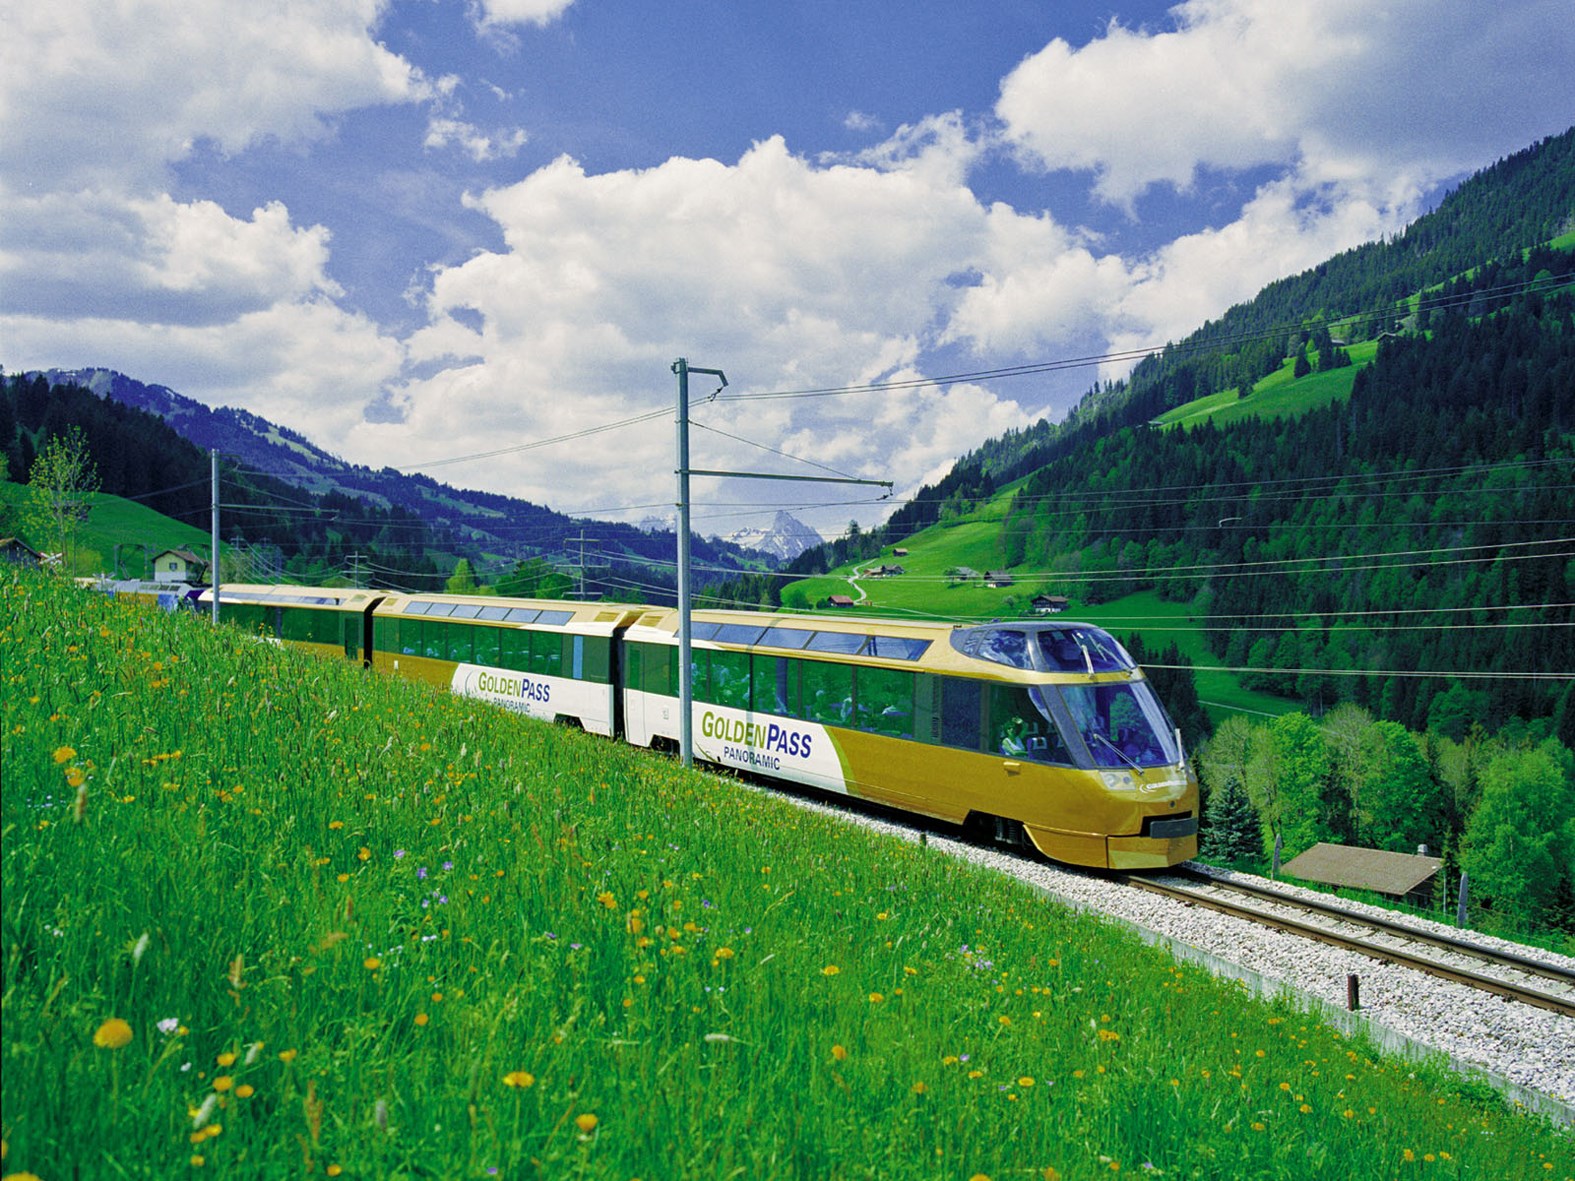 瑞士 | 黃金列車 Golden Pass | 經典瑞士火車之旅 | 莫先生 Mr.Mo Traveling